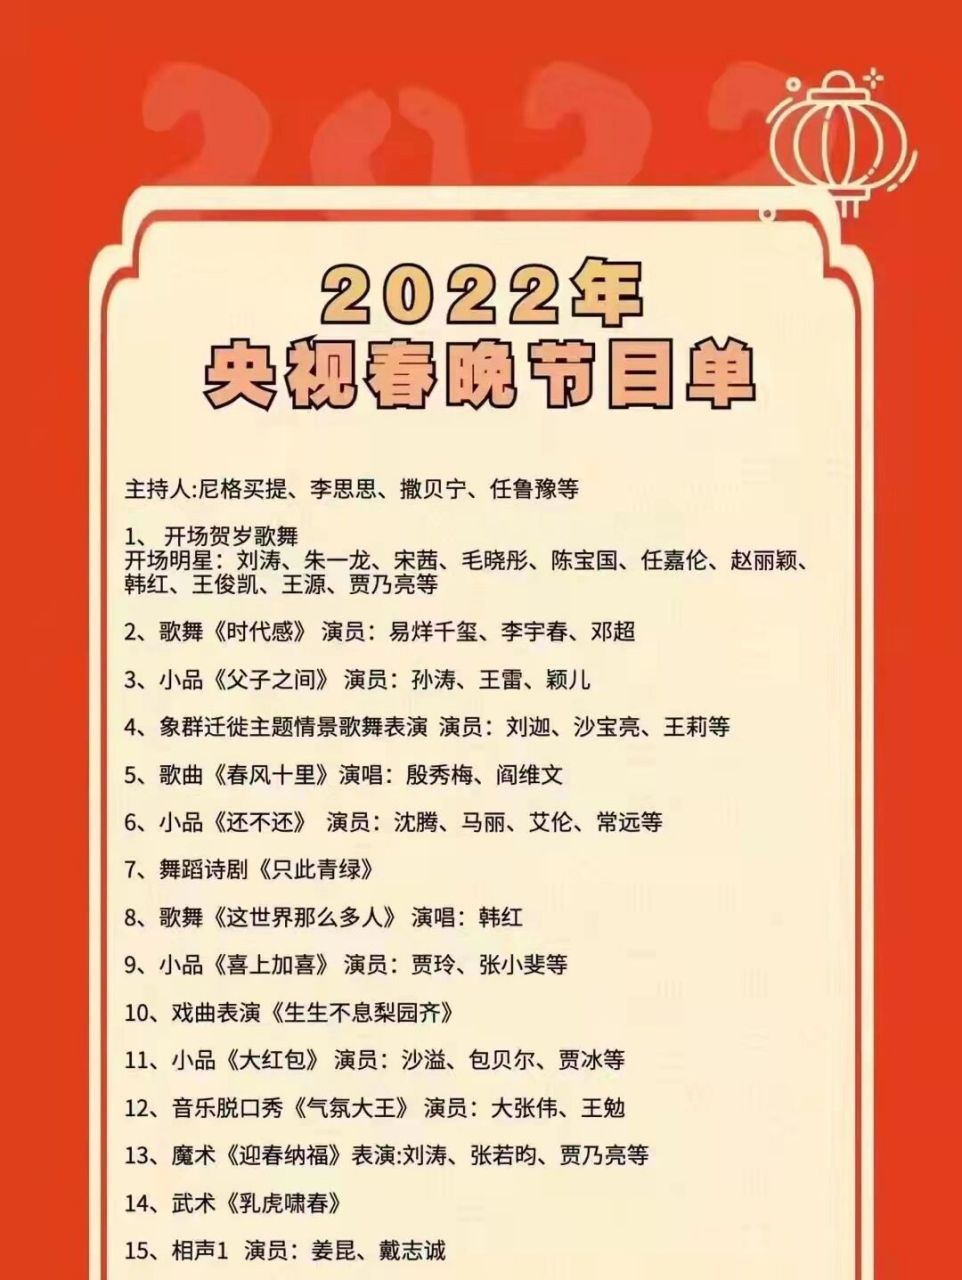 2022春晚节目名单图片